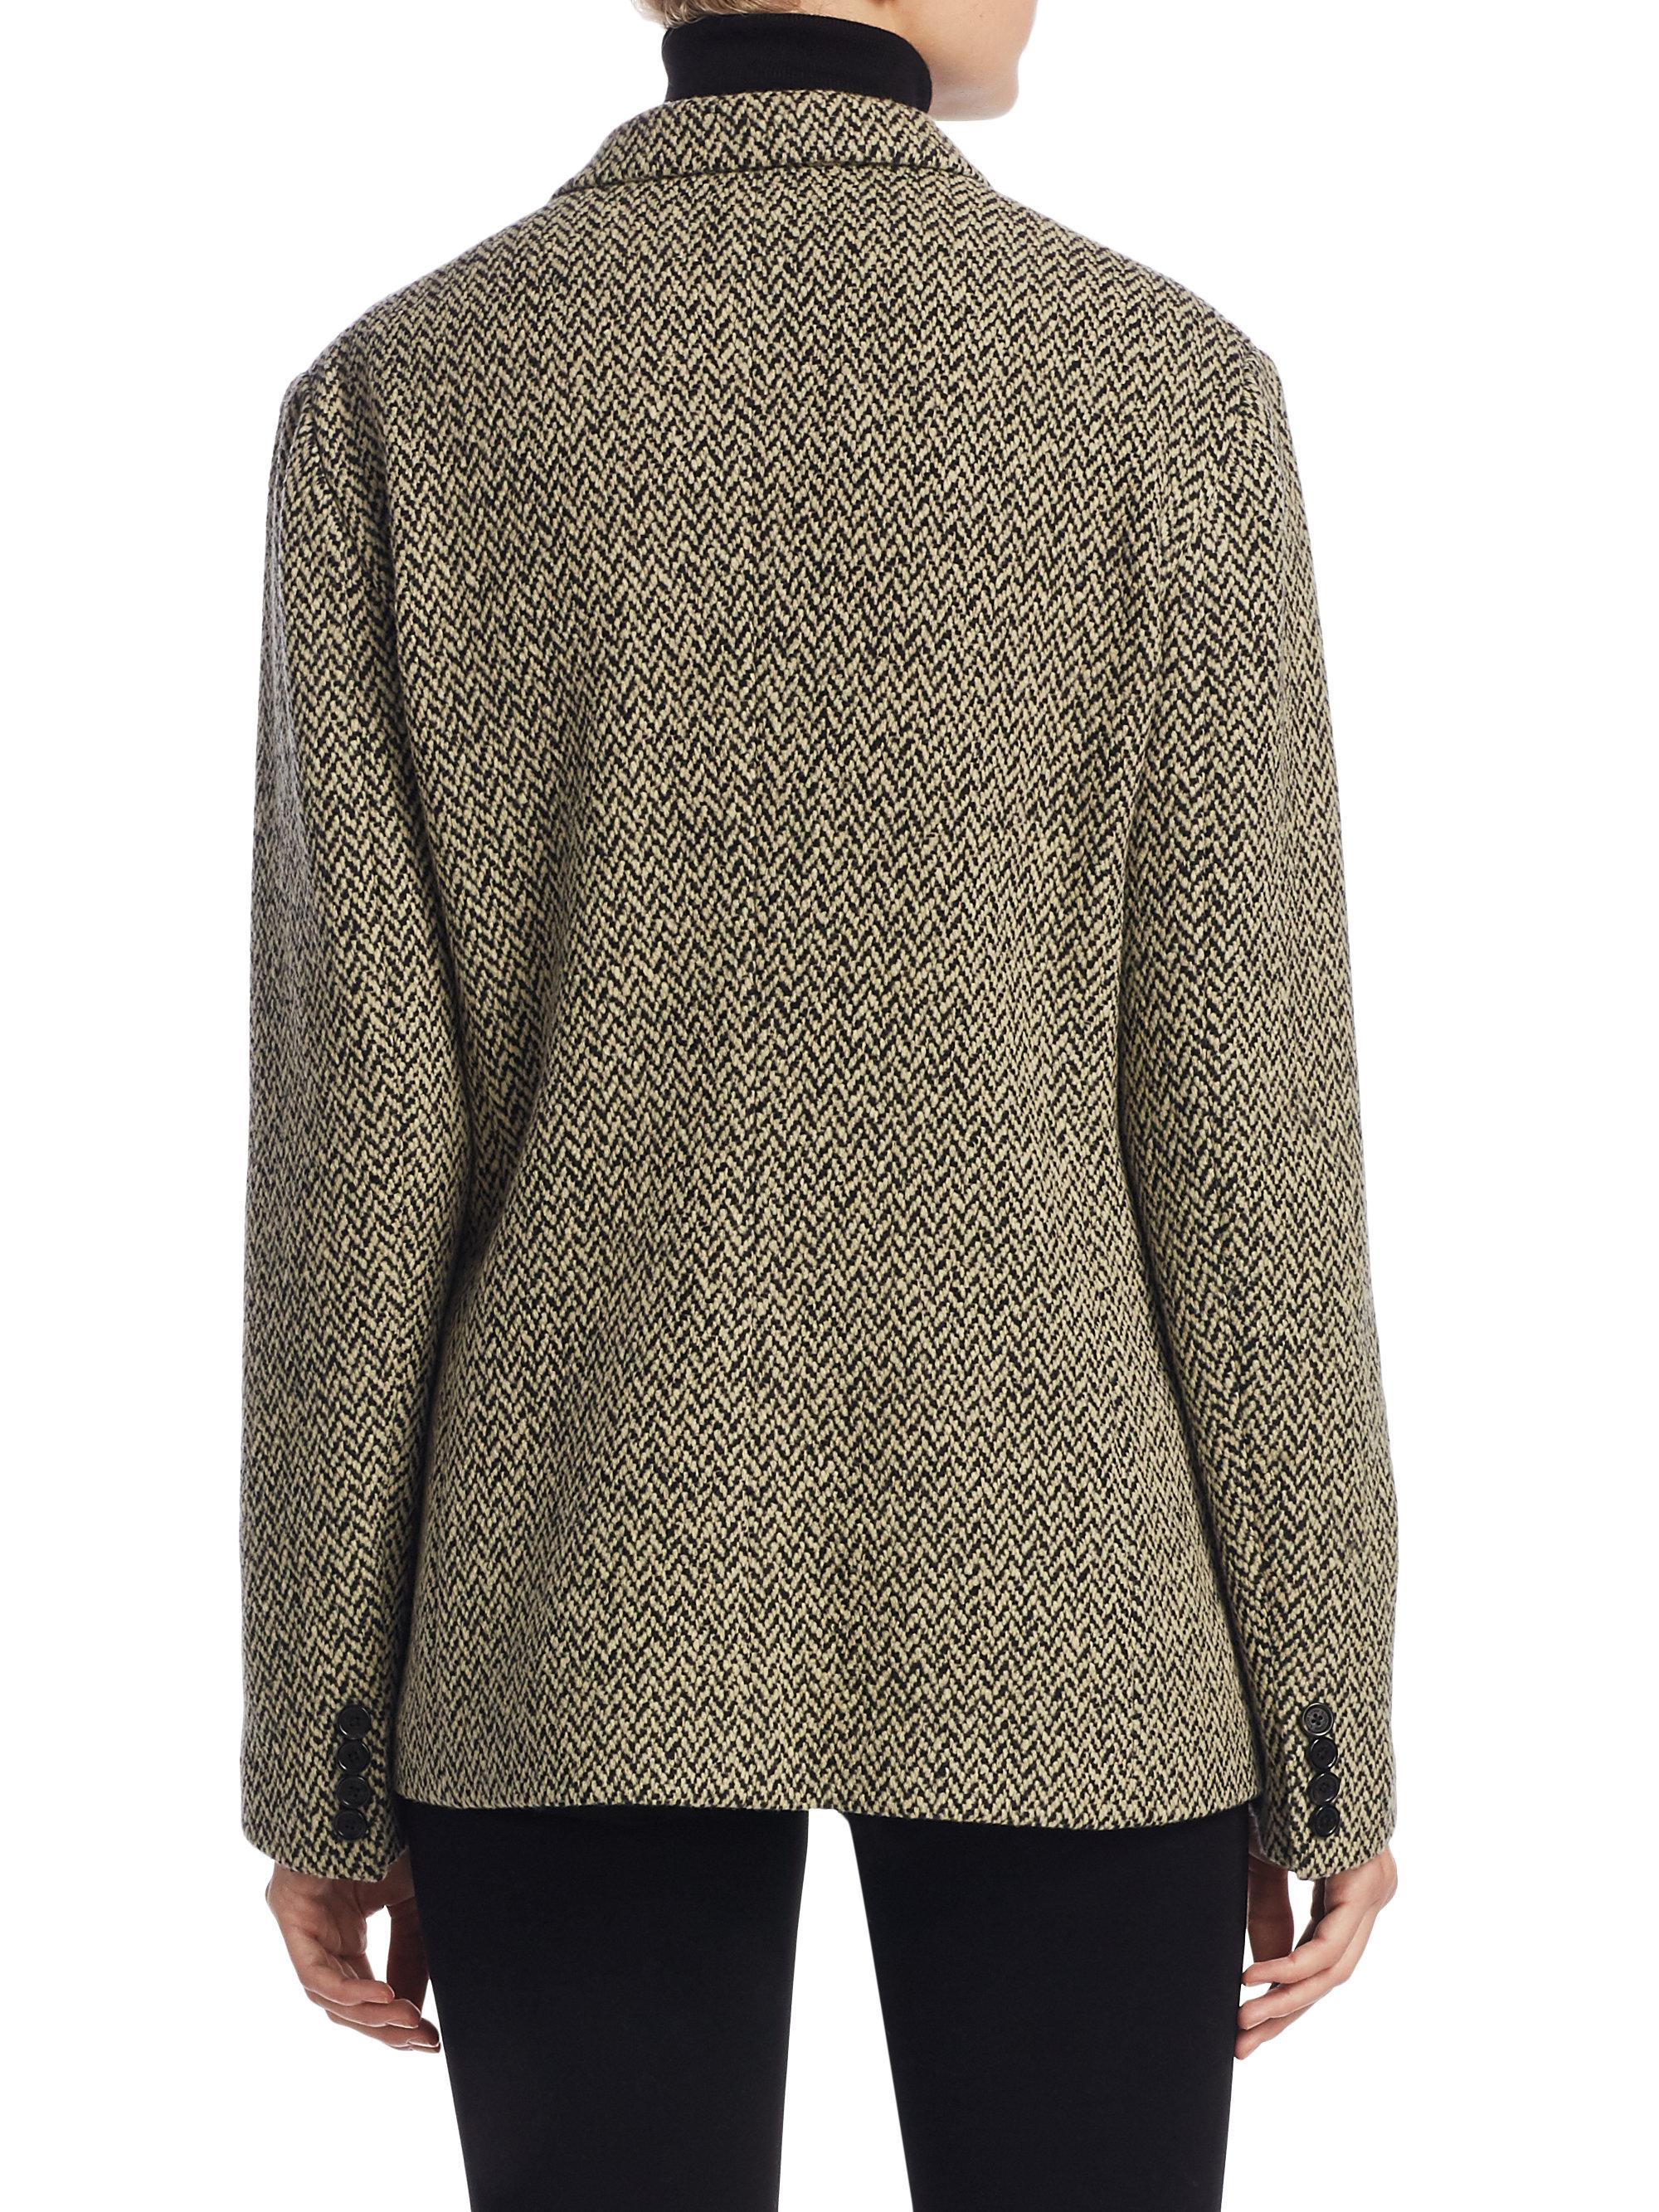 Lyst - Ralph Lauren Collection Adley Herringbone Tweed Sweater Jacket ...